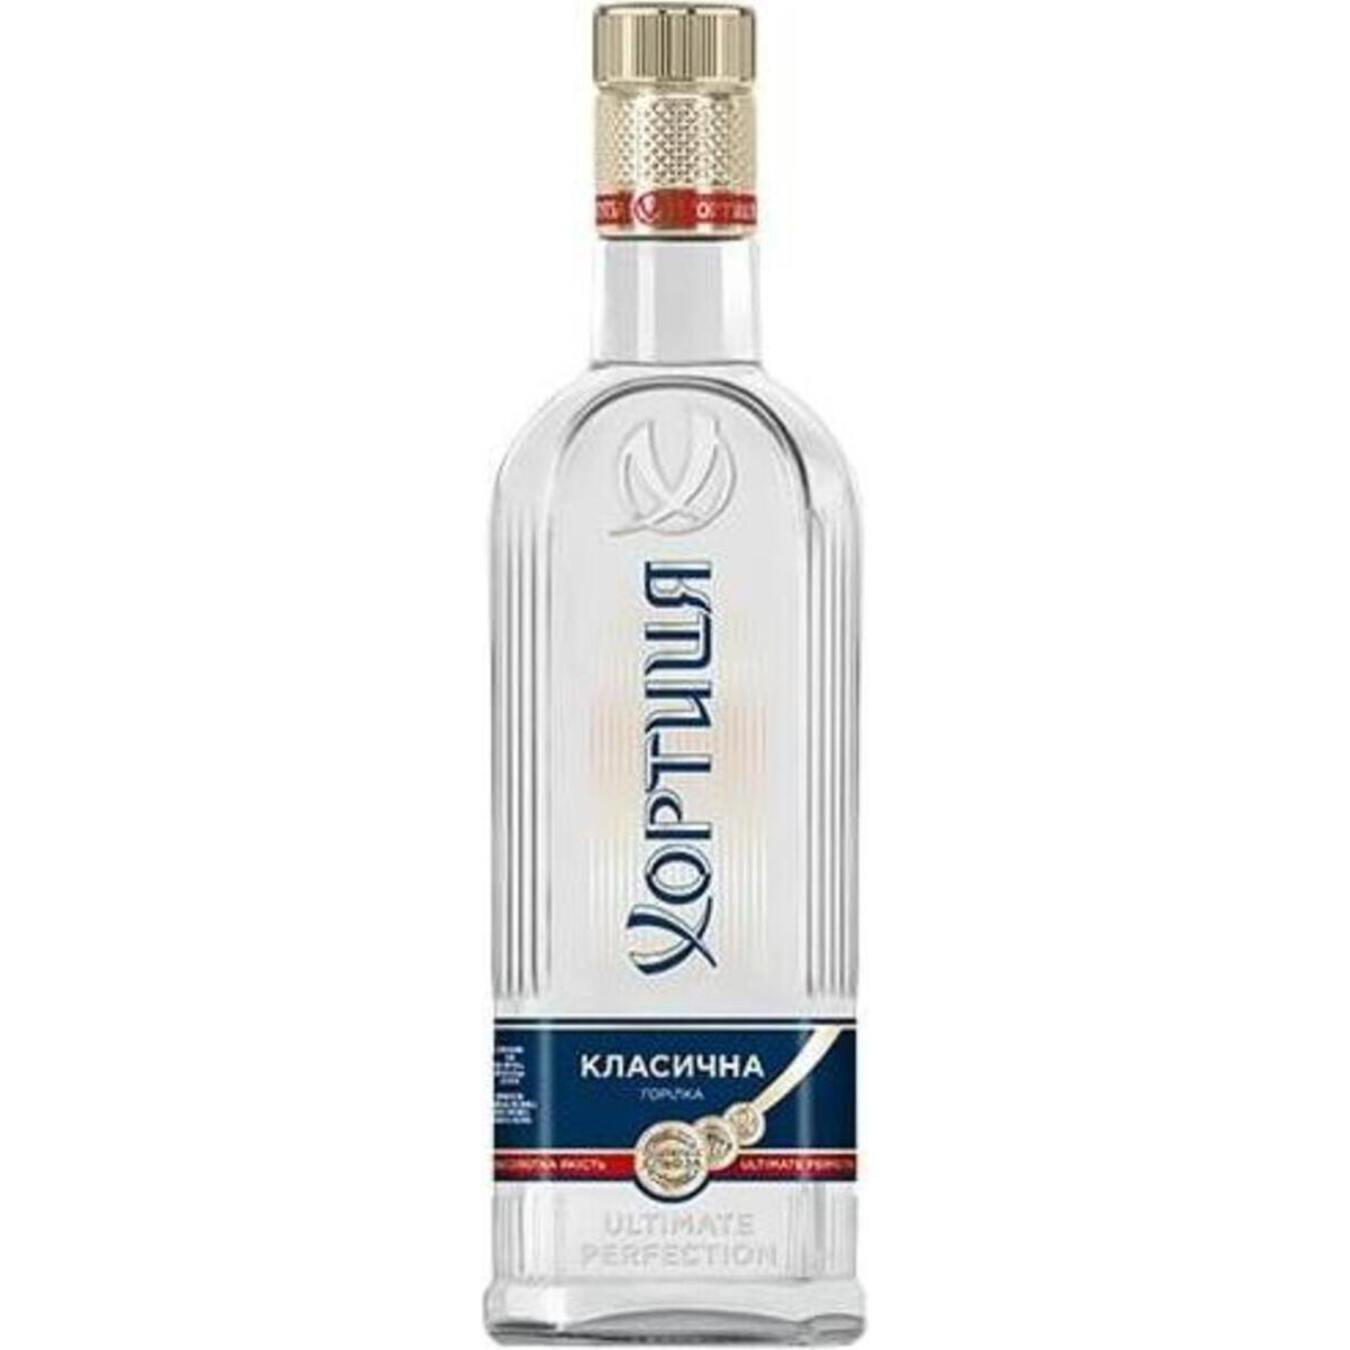 Khortytsia Vodka Classic 40% stock 0.5 l 2